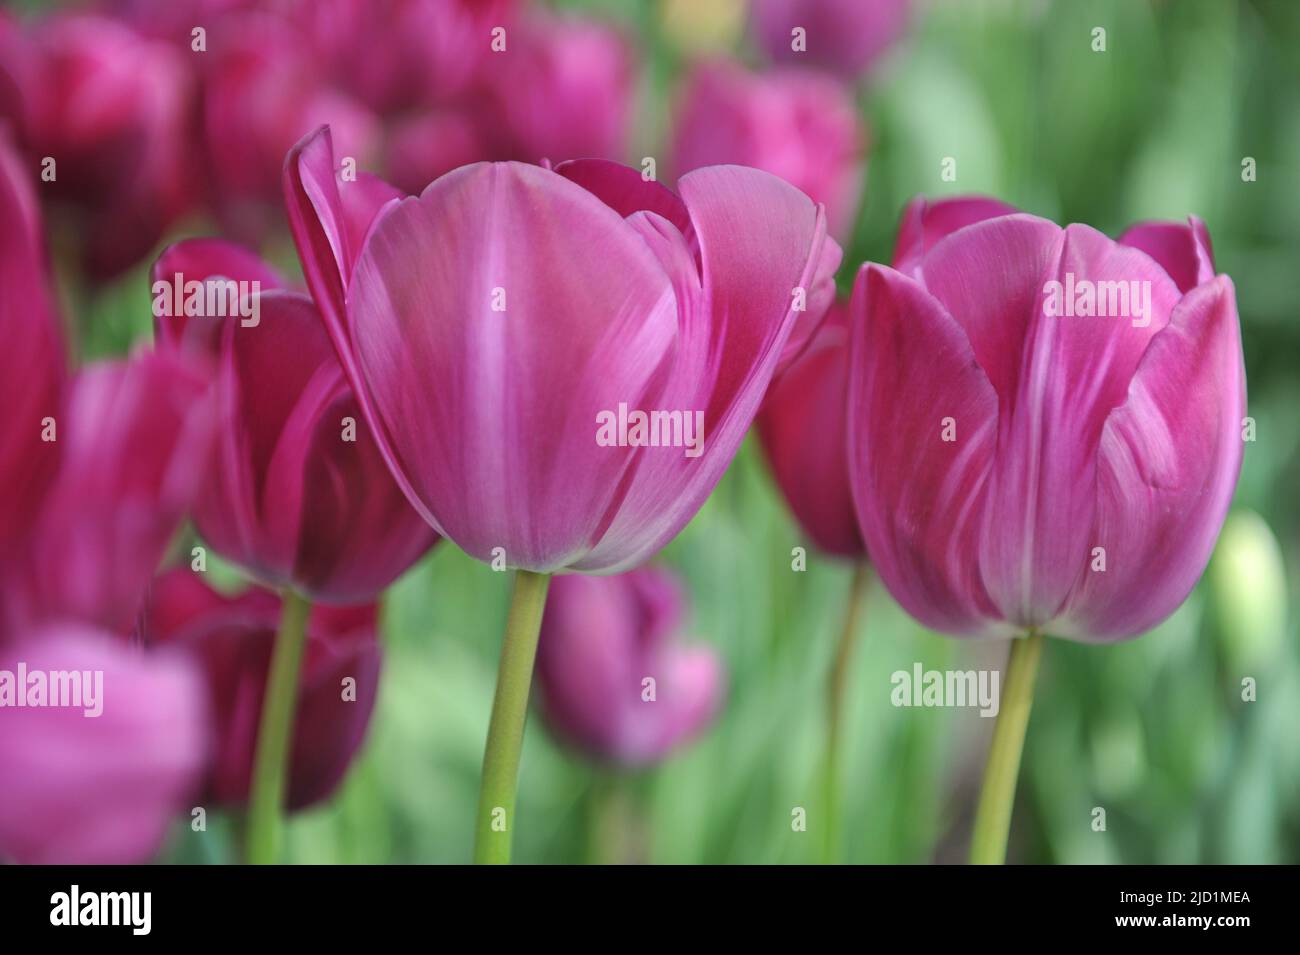 Tulipani viola Triumph (Tulipa) Paarse Graffiti fioriscono in un giardino nel mese di aprile Foto Stock